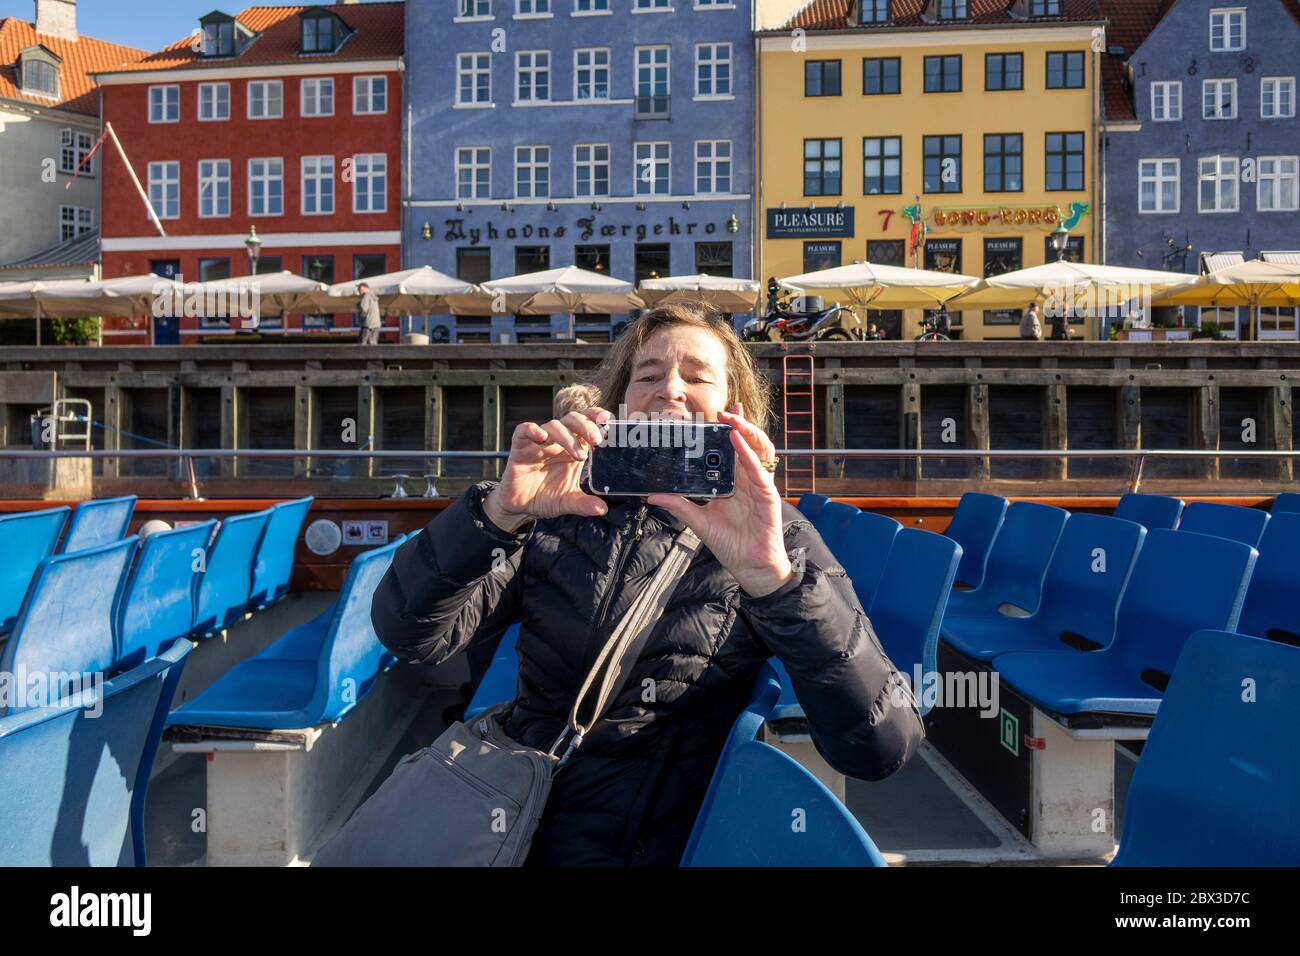 Frau, die Fotos auf einem Smartphone von EINER Kopenhagener Kanalboottour auf einer Tour durch die Kanäle von Kopenhagen Dänemark von Nyhavn Waterfront Stockfoto